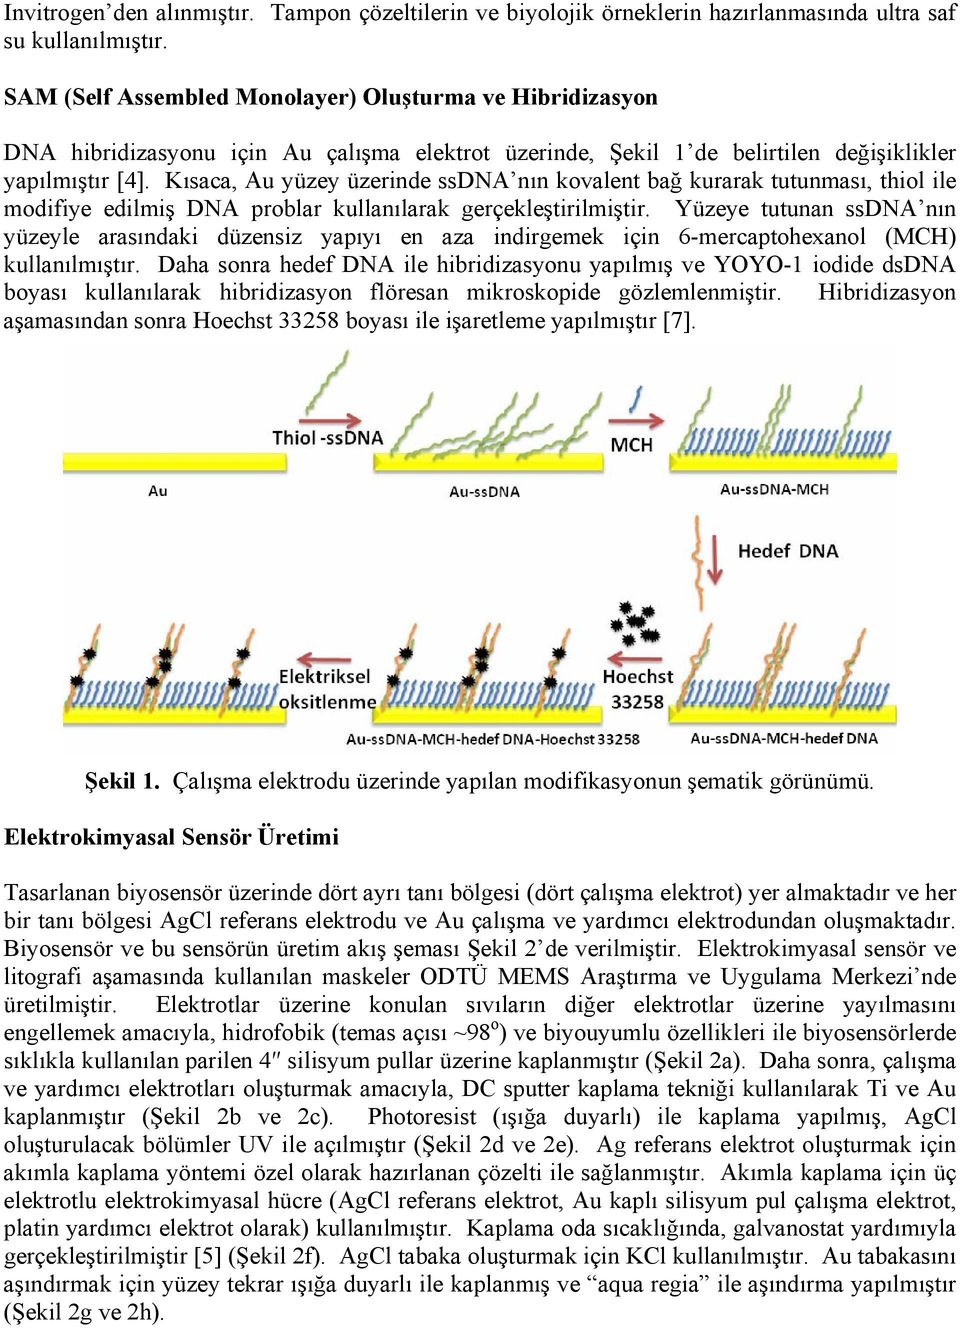 Kısaca, Au yüzey üzerinde ssdna nın kovalent bağ kurarak tutunması, thiol ile modifiye edilmiş DNA problar kullanılarak gerçekleştirilmiştir.